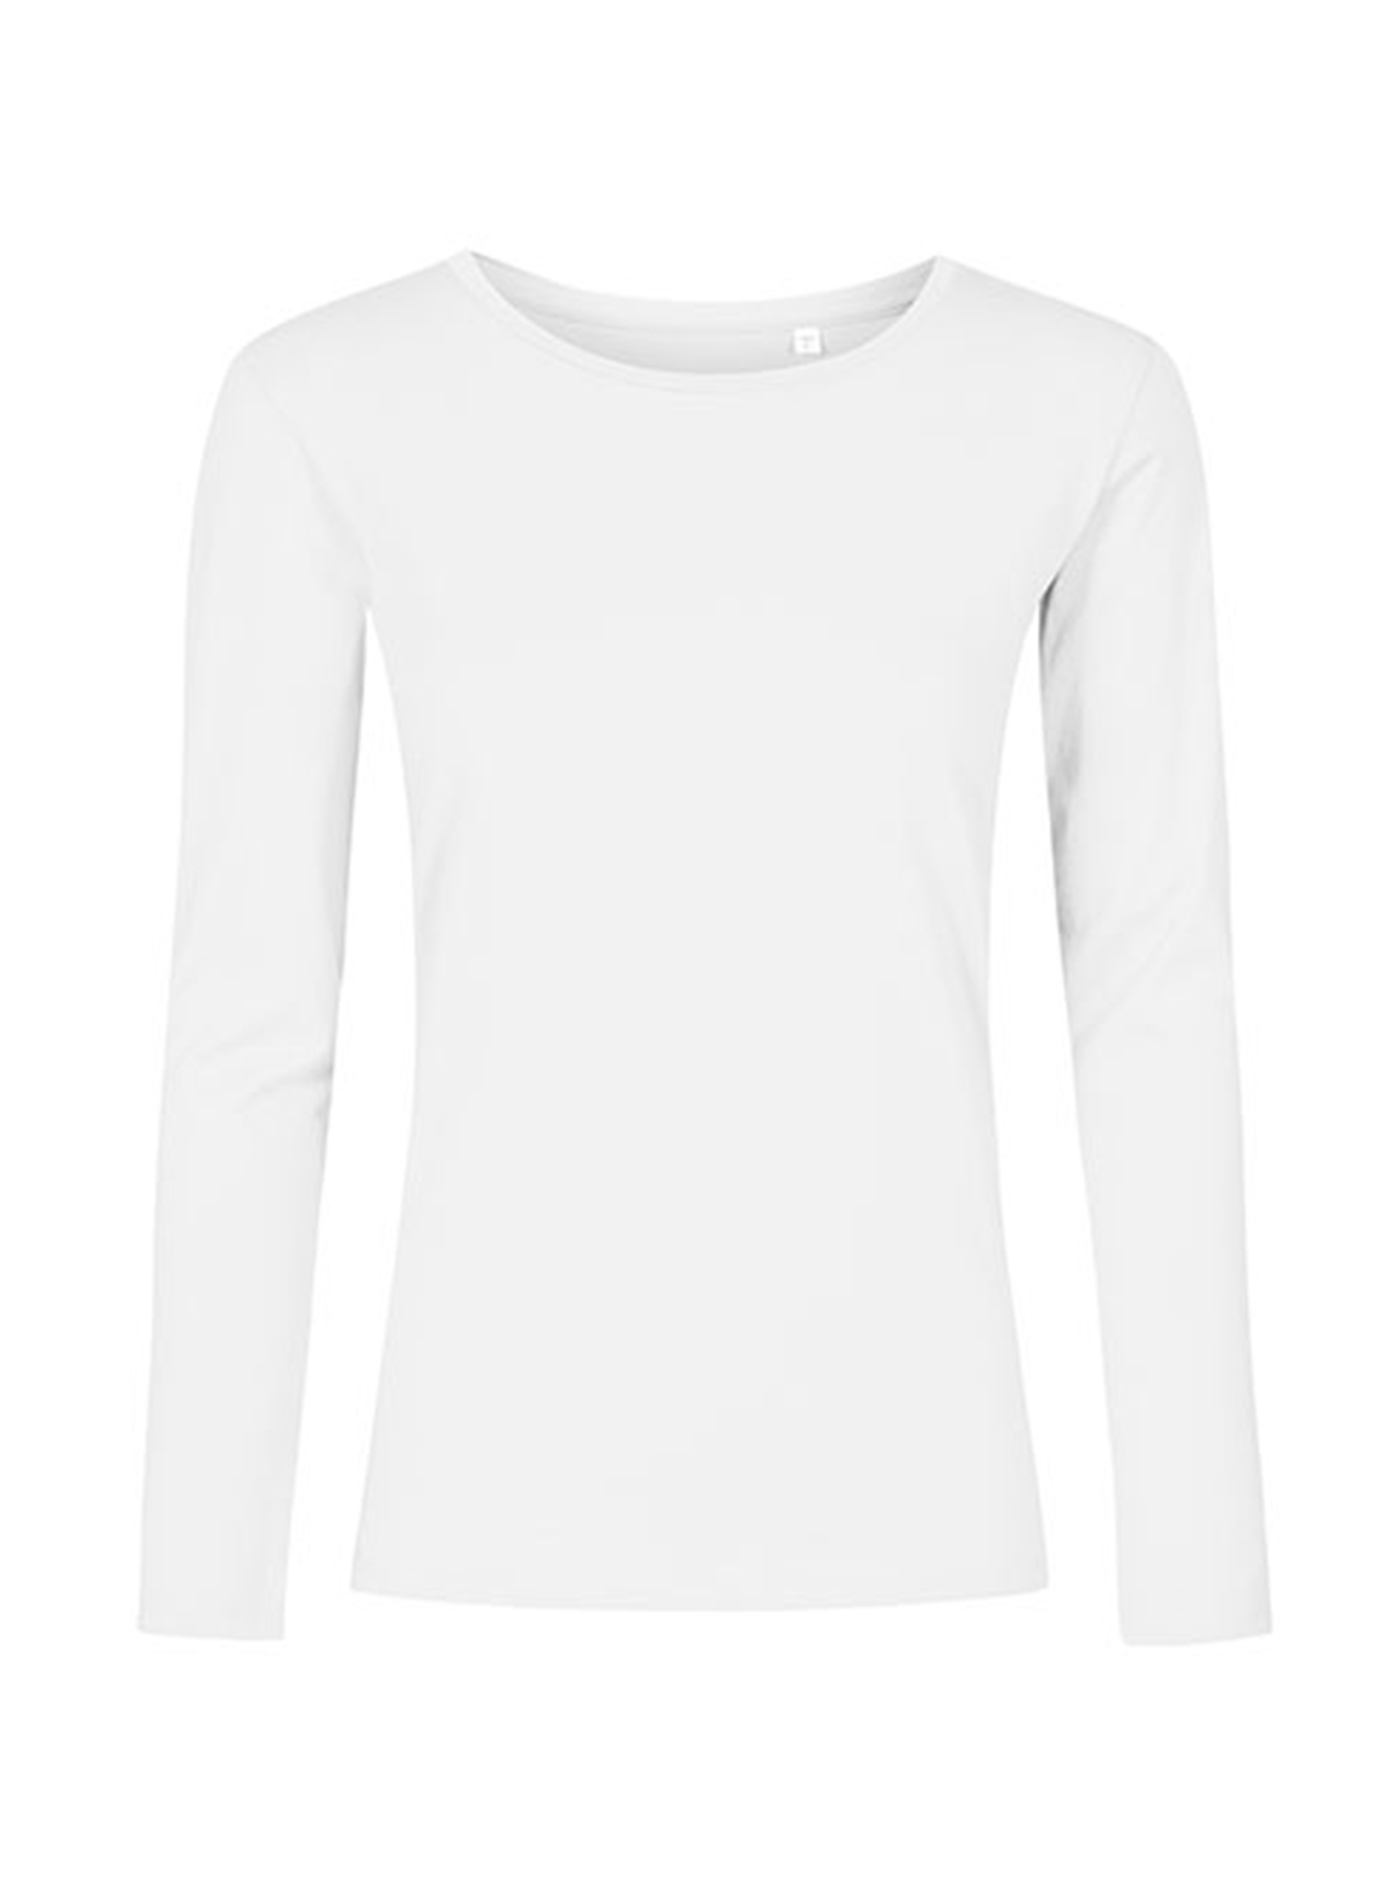 Dámské tričko s dlouhým rukávem s kulatým výstřihem Promodoro - Bílá M